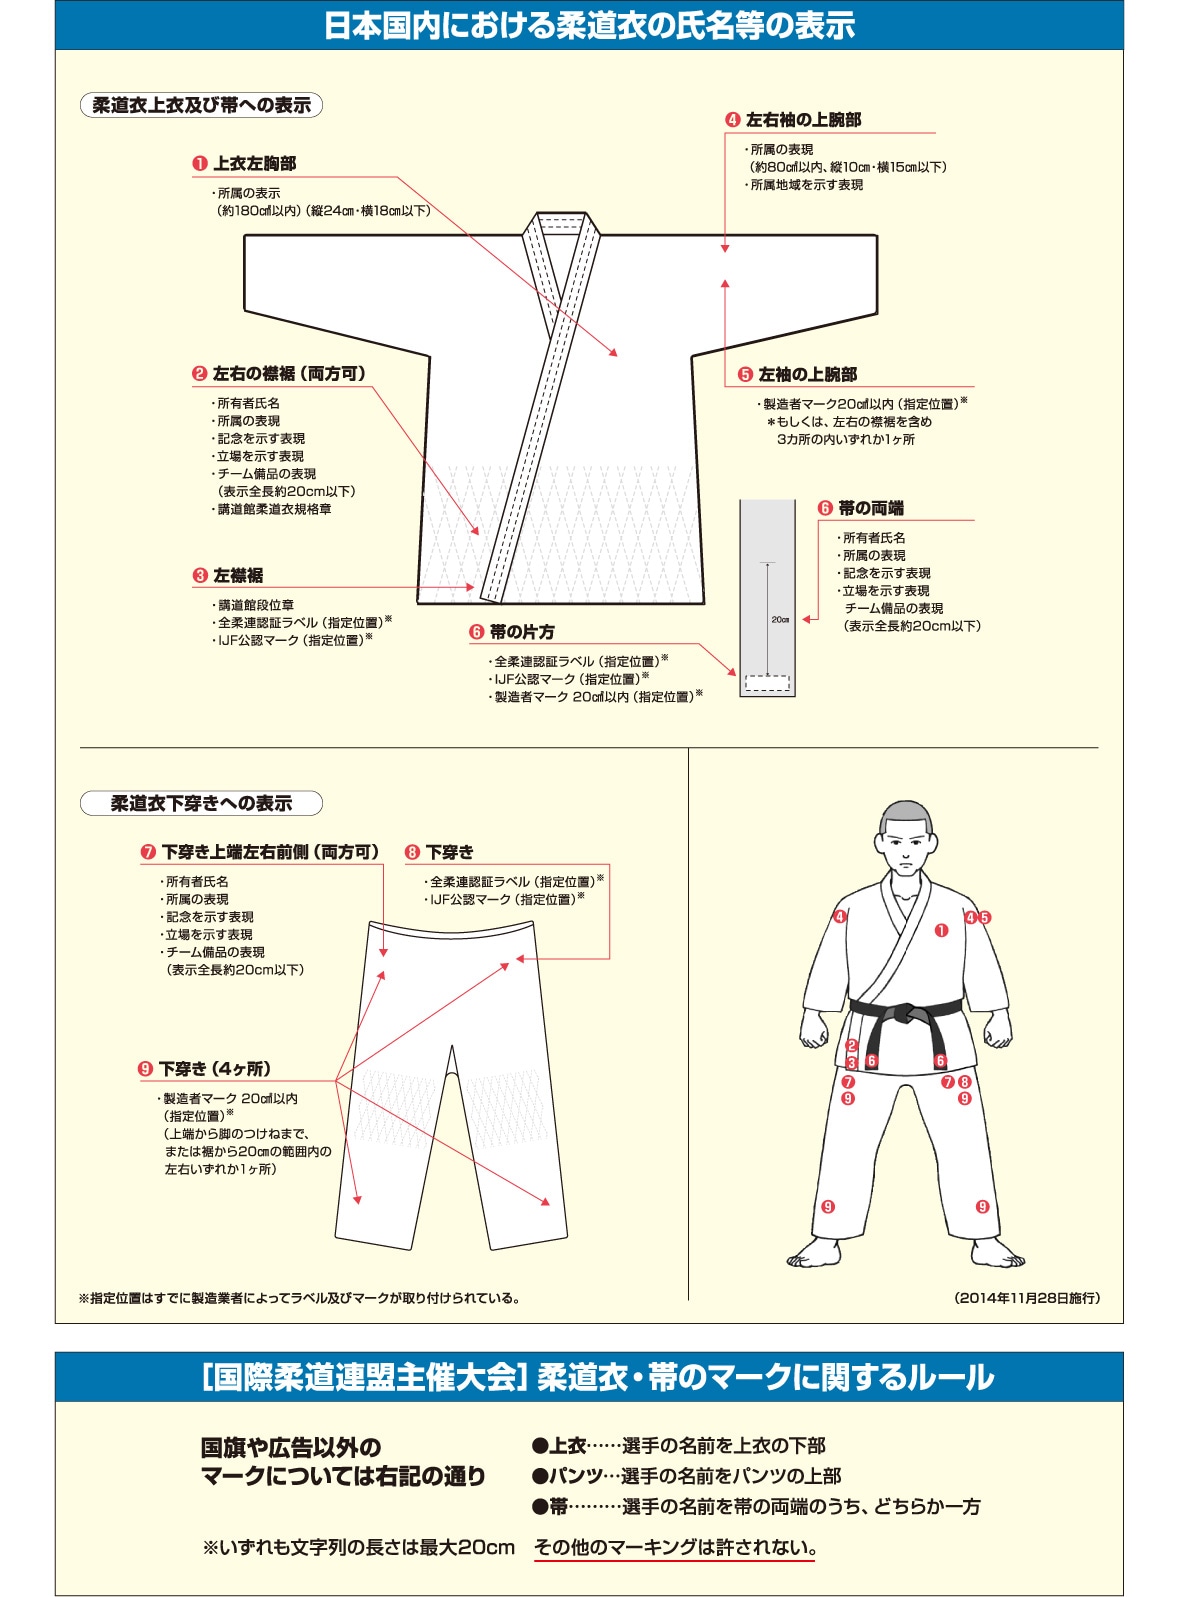 日本国内における柔道衣の氏名等の表示